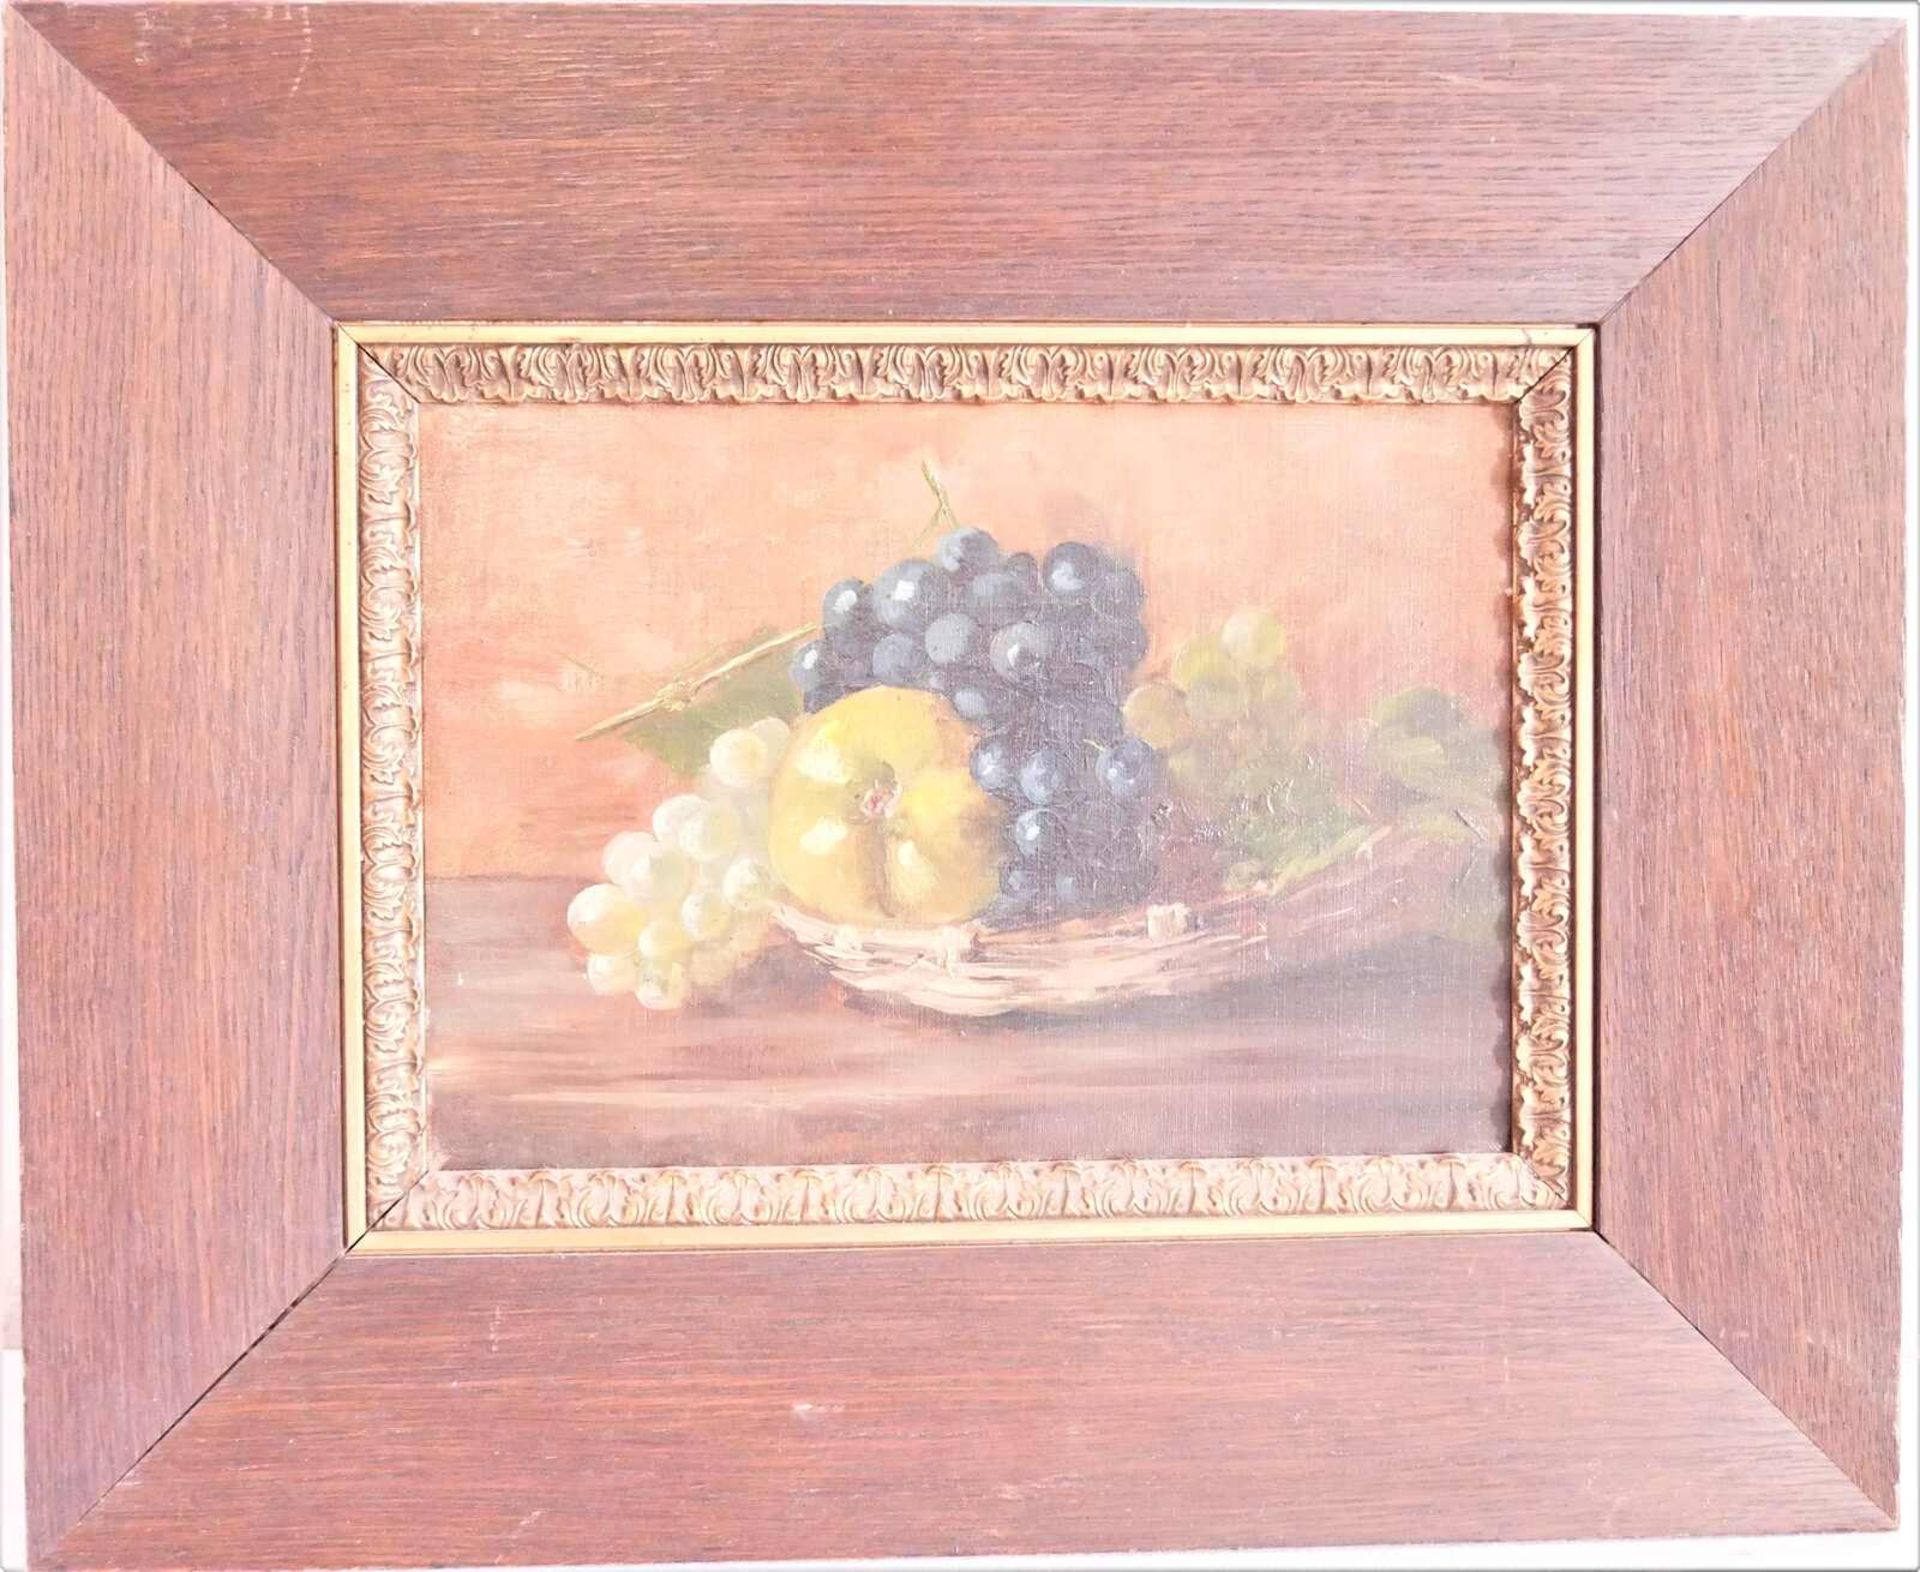 unbekannter Künstler, Ölgemälde auf Leinwand "Früchtestilleben mit Trauben", in alter Rahmung. Maße: